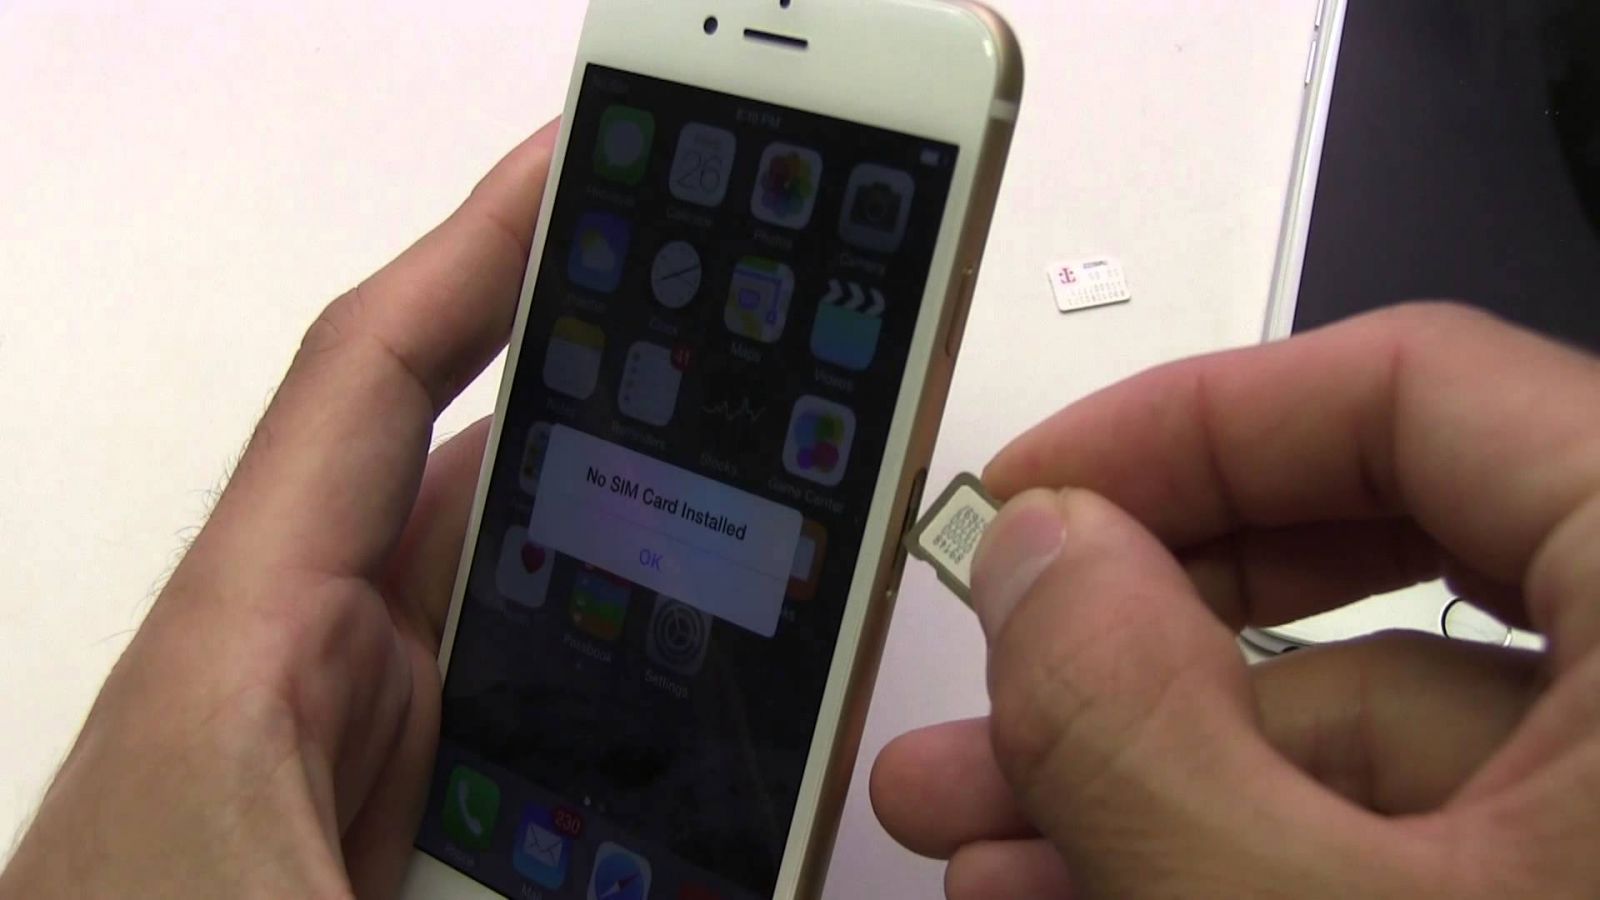 iPhone lock, sim ghép không được tháo sim, cập nhật iOS lúc này